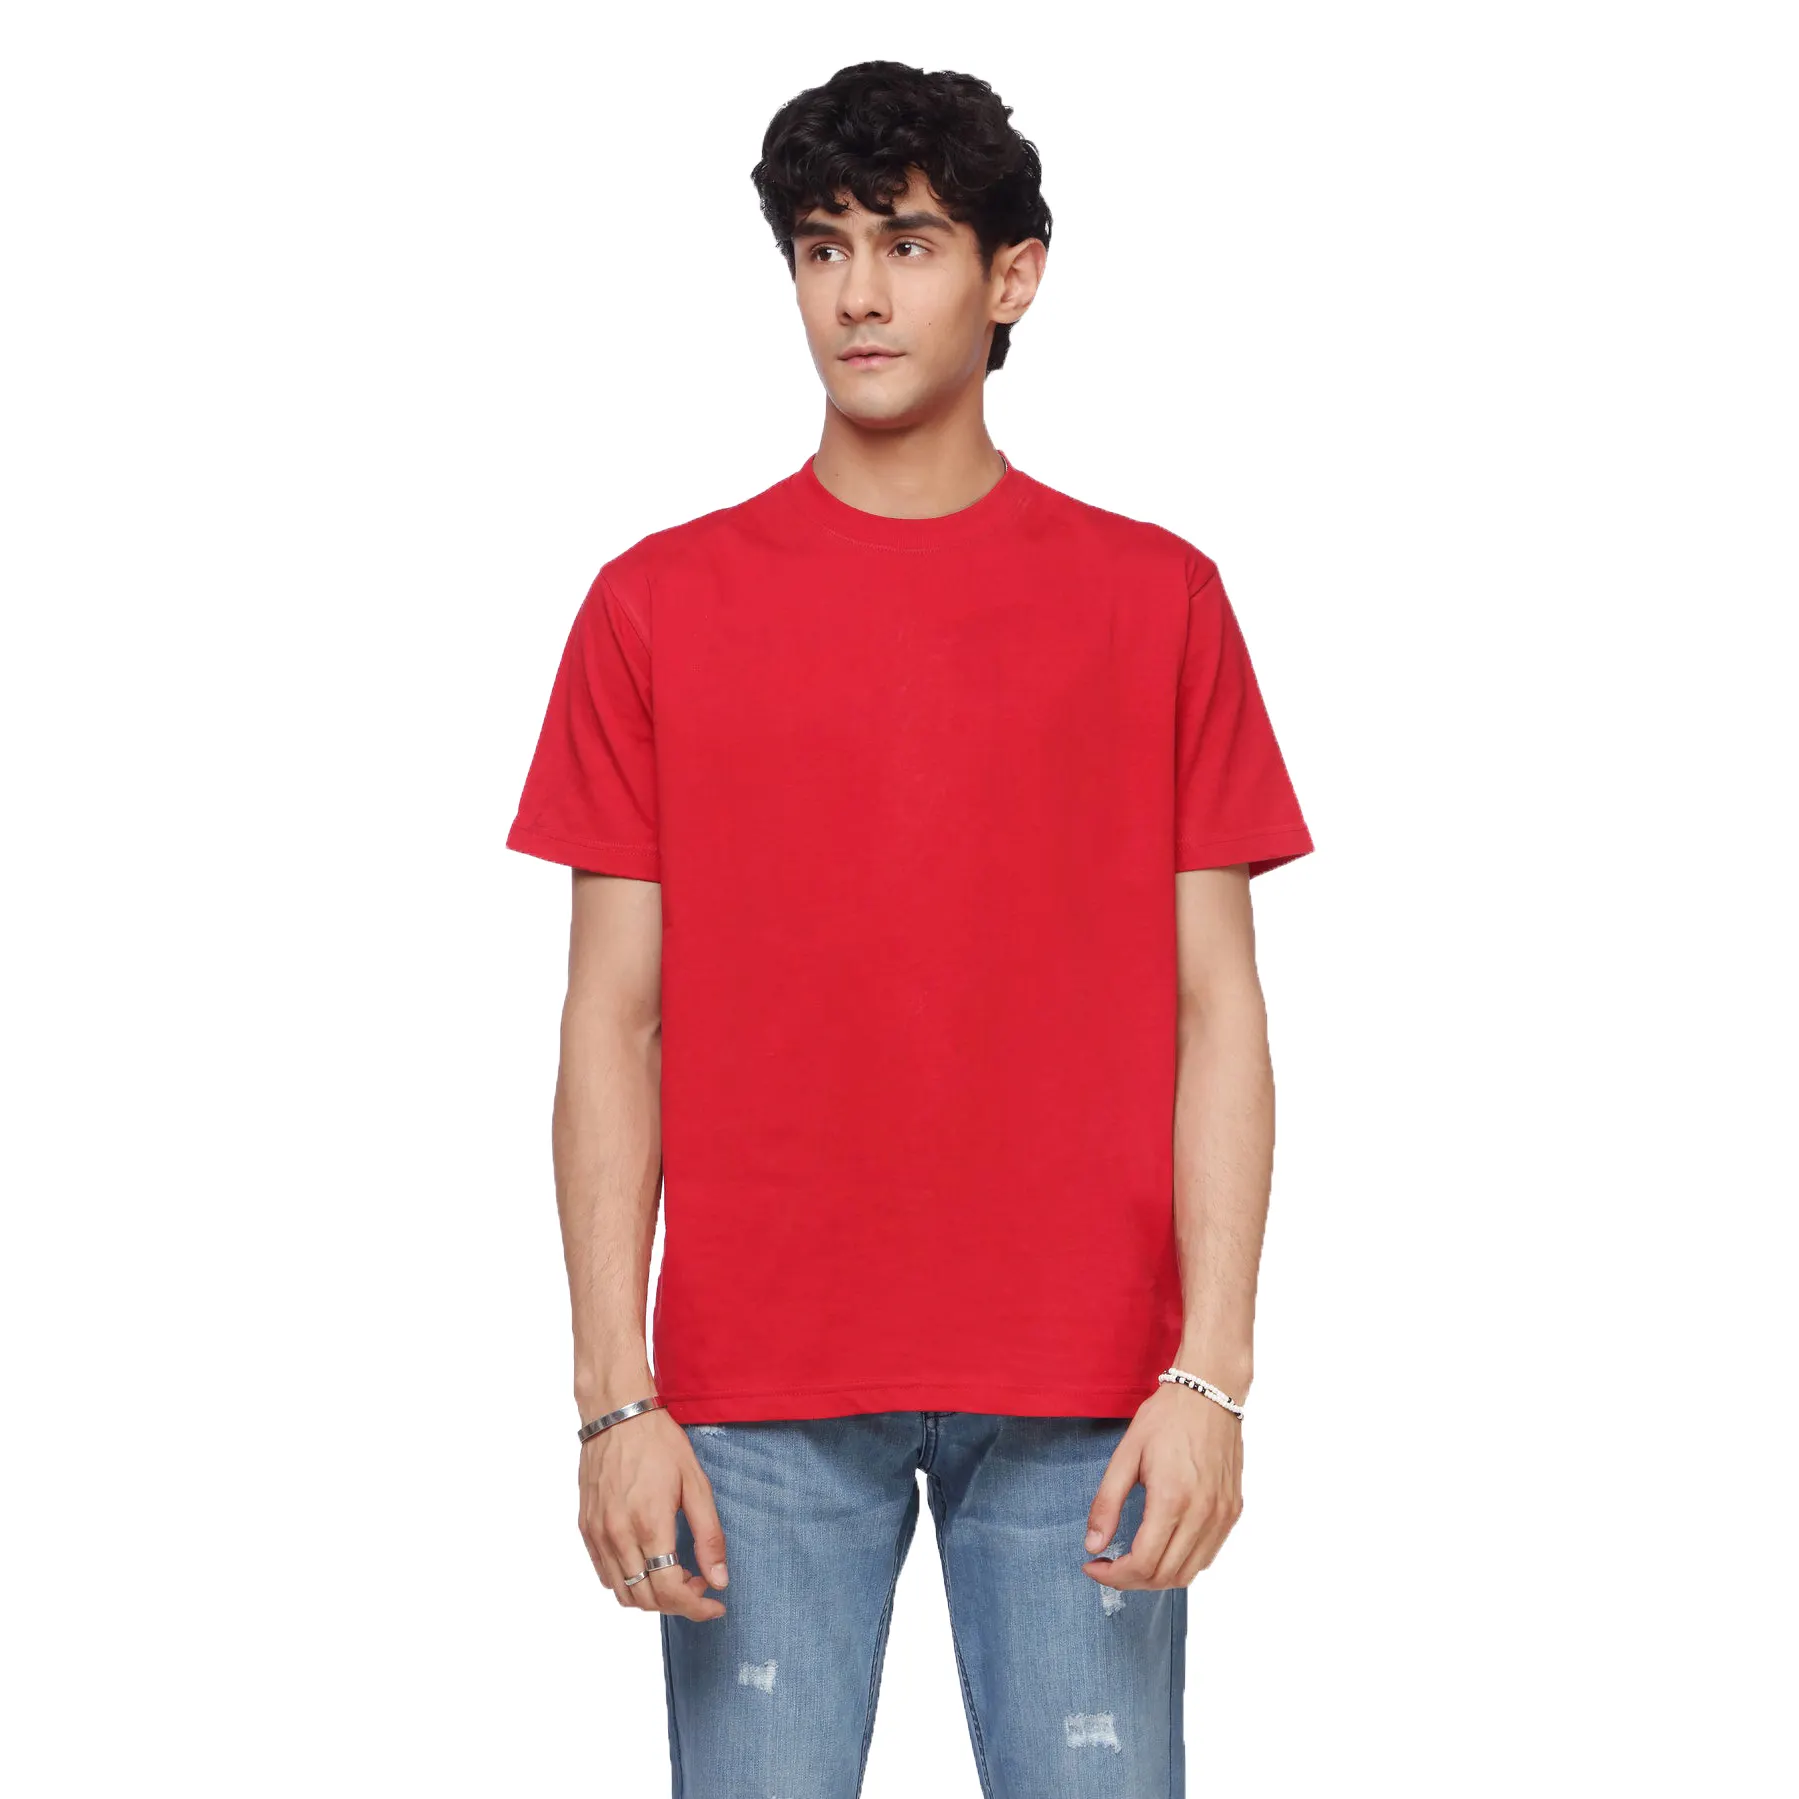 2023 새로운 사용자 정의 디자인 하이 퀄리티 남성 T 셔츠 도매 가격 트렌드 T 셔츠 남성 의류